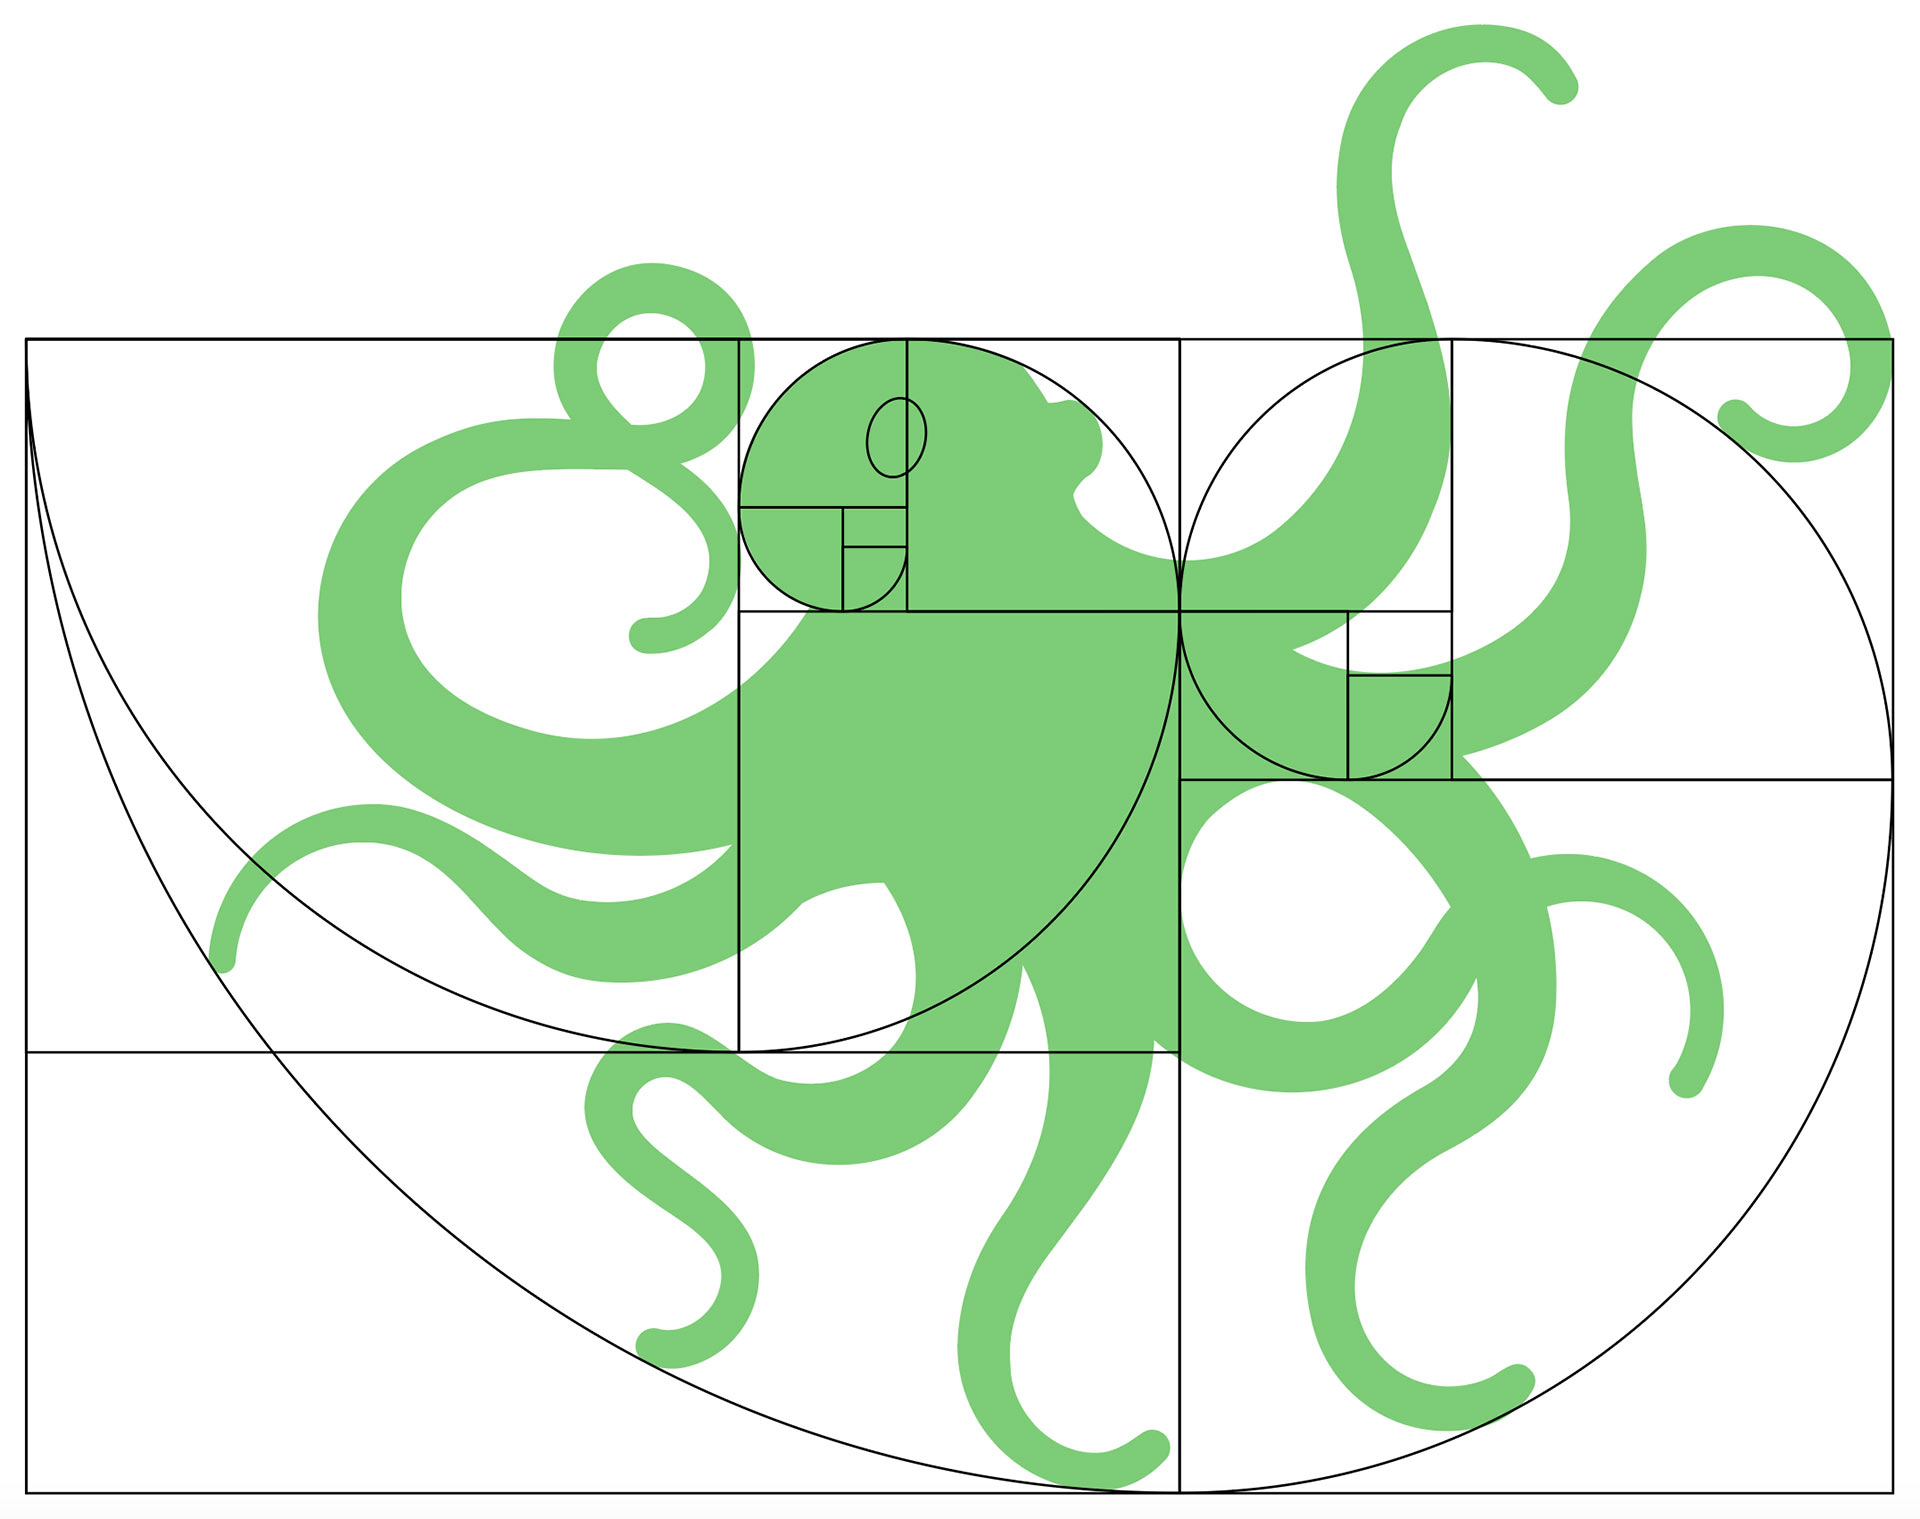 Grüner Oktopus in zwei goldenen Spiralen